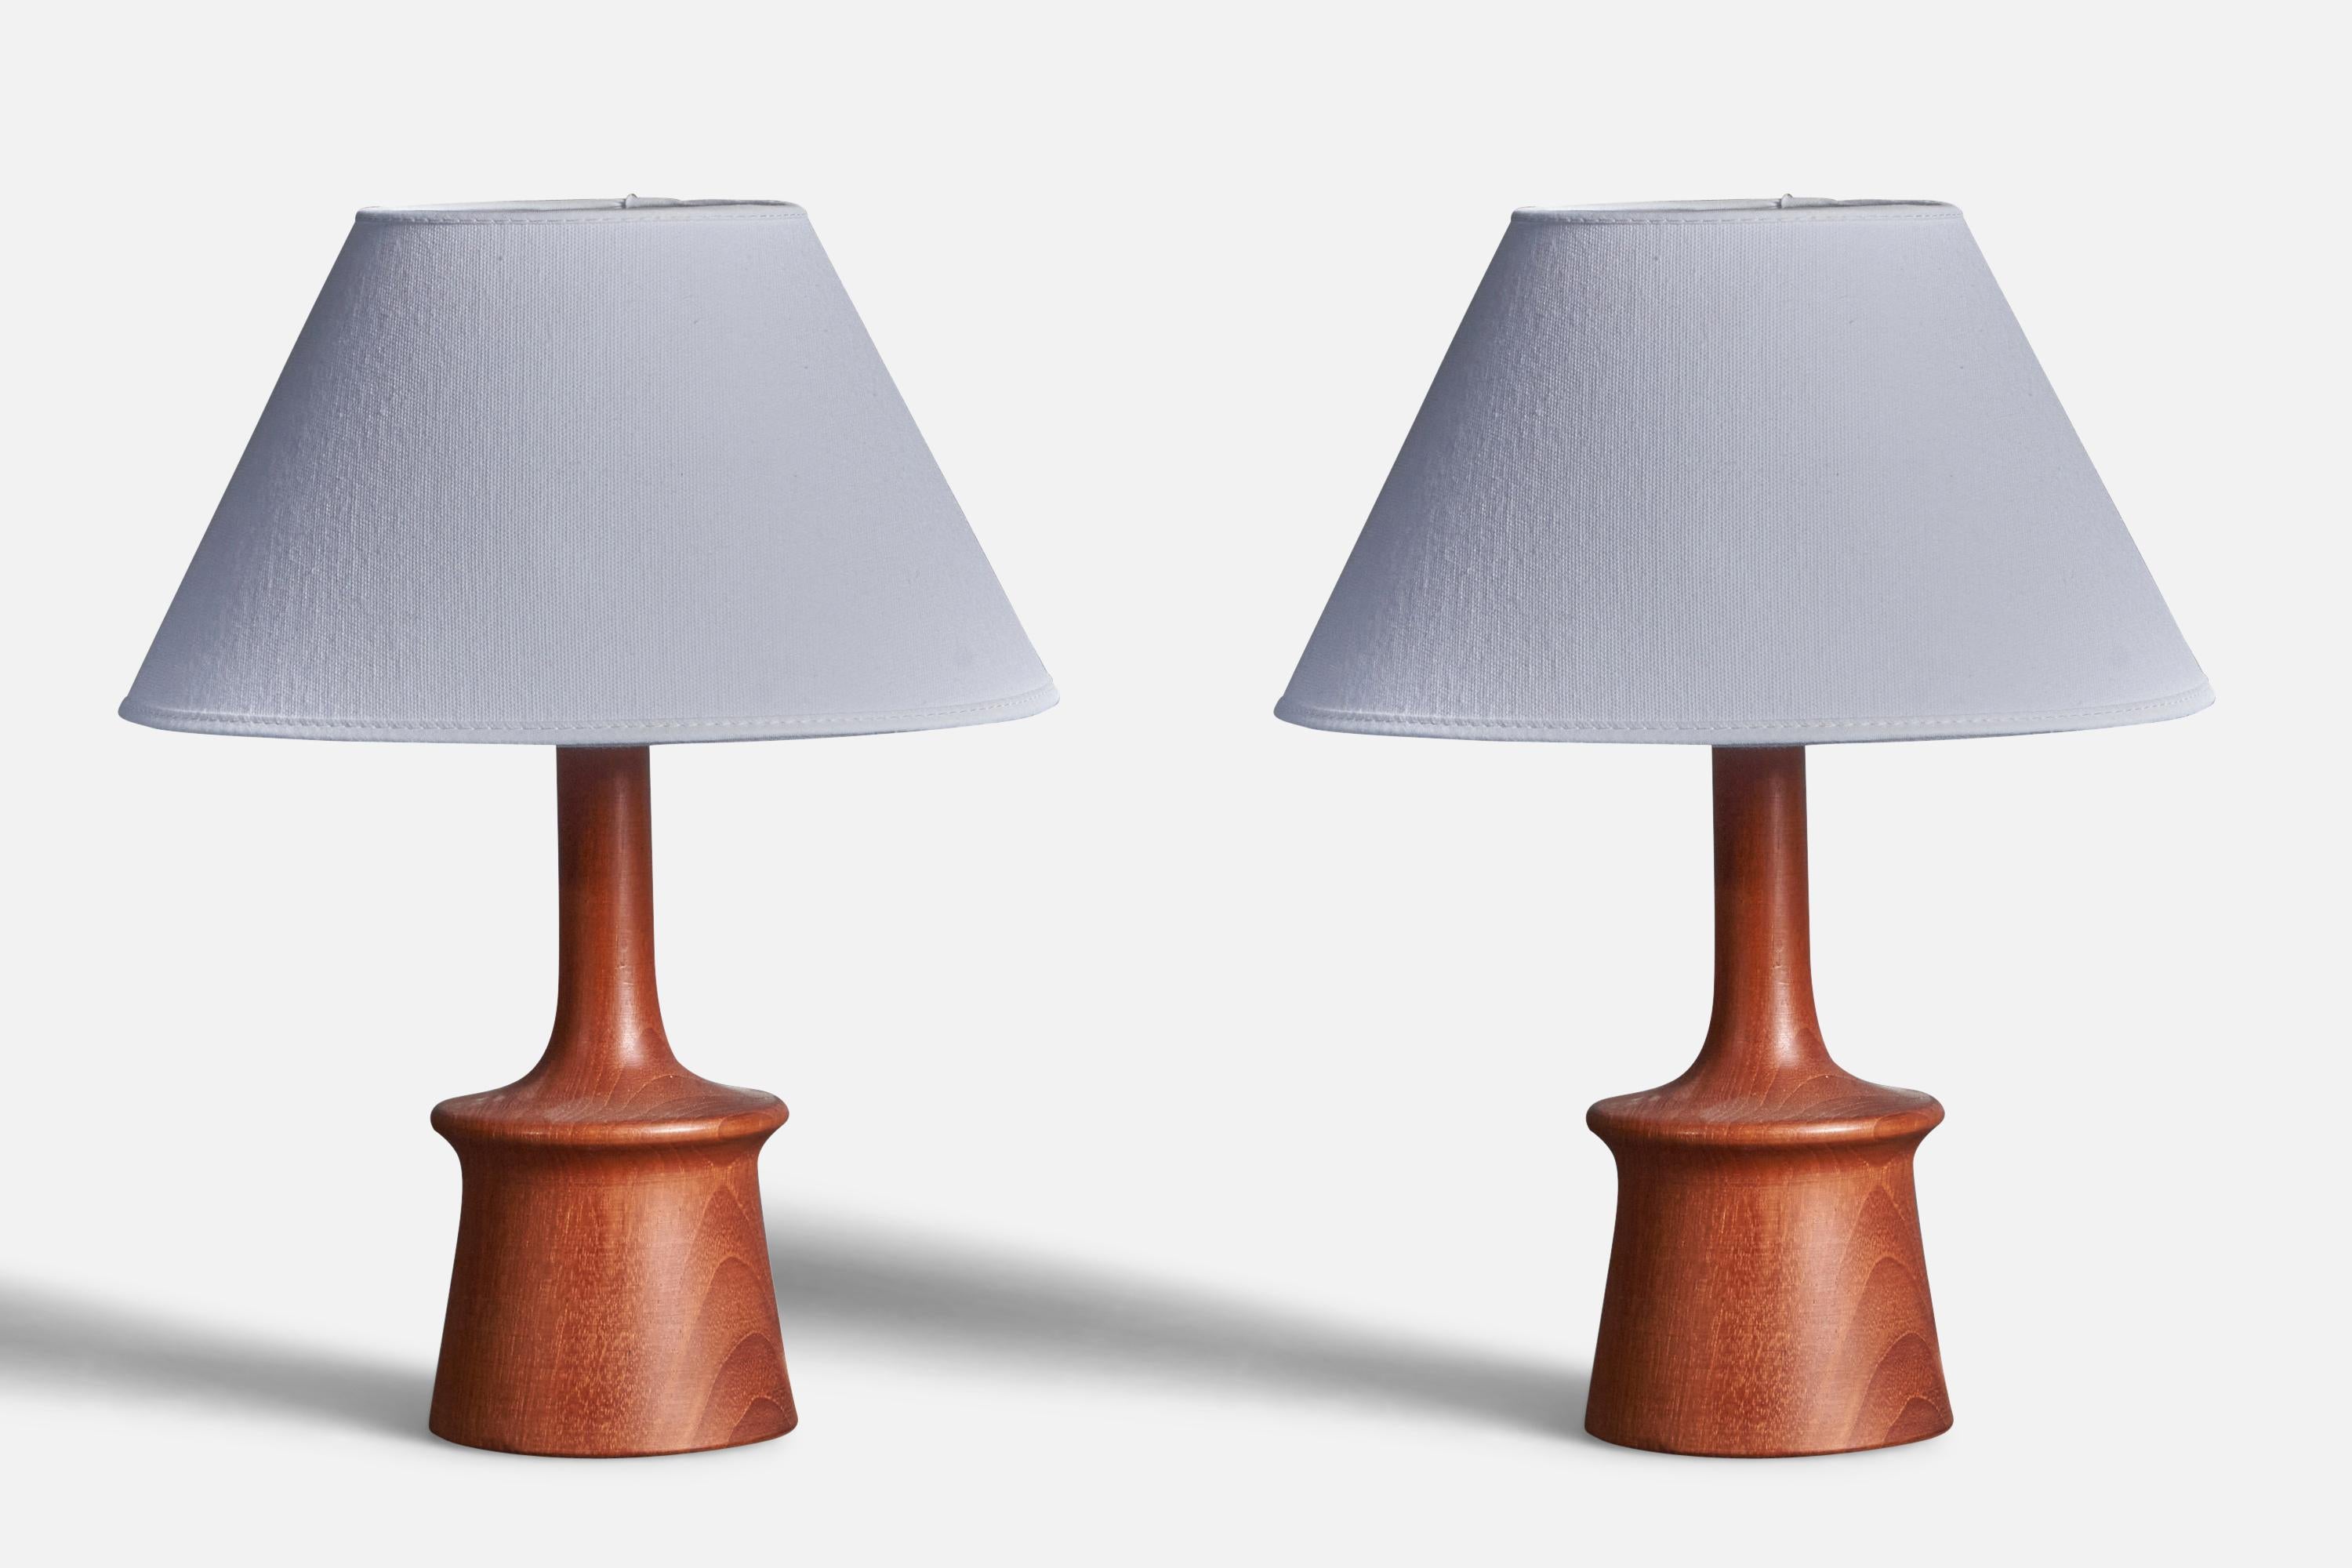 Swedish, Modernist Table Lamps, Teak, Sweden, 1960s For Sale 1